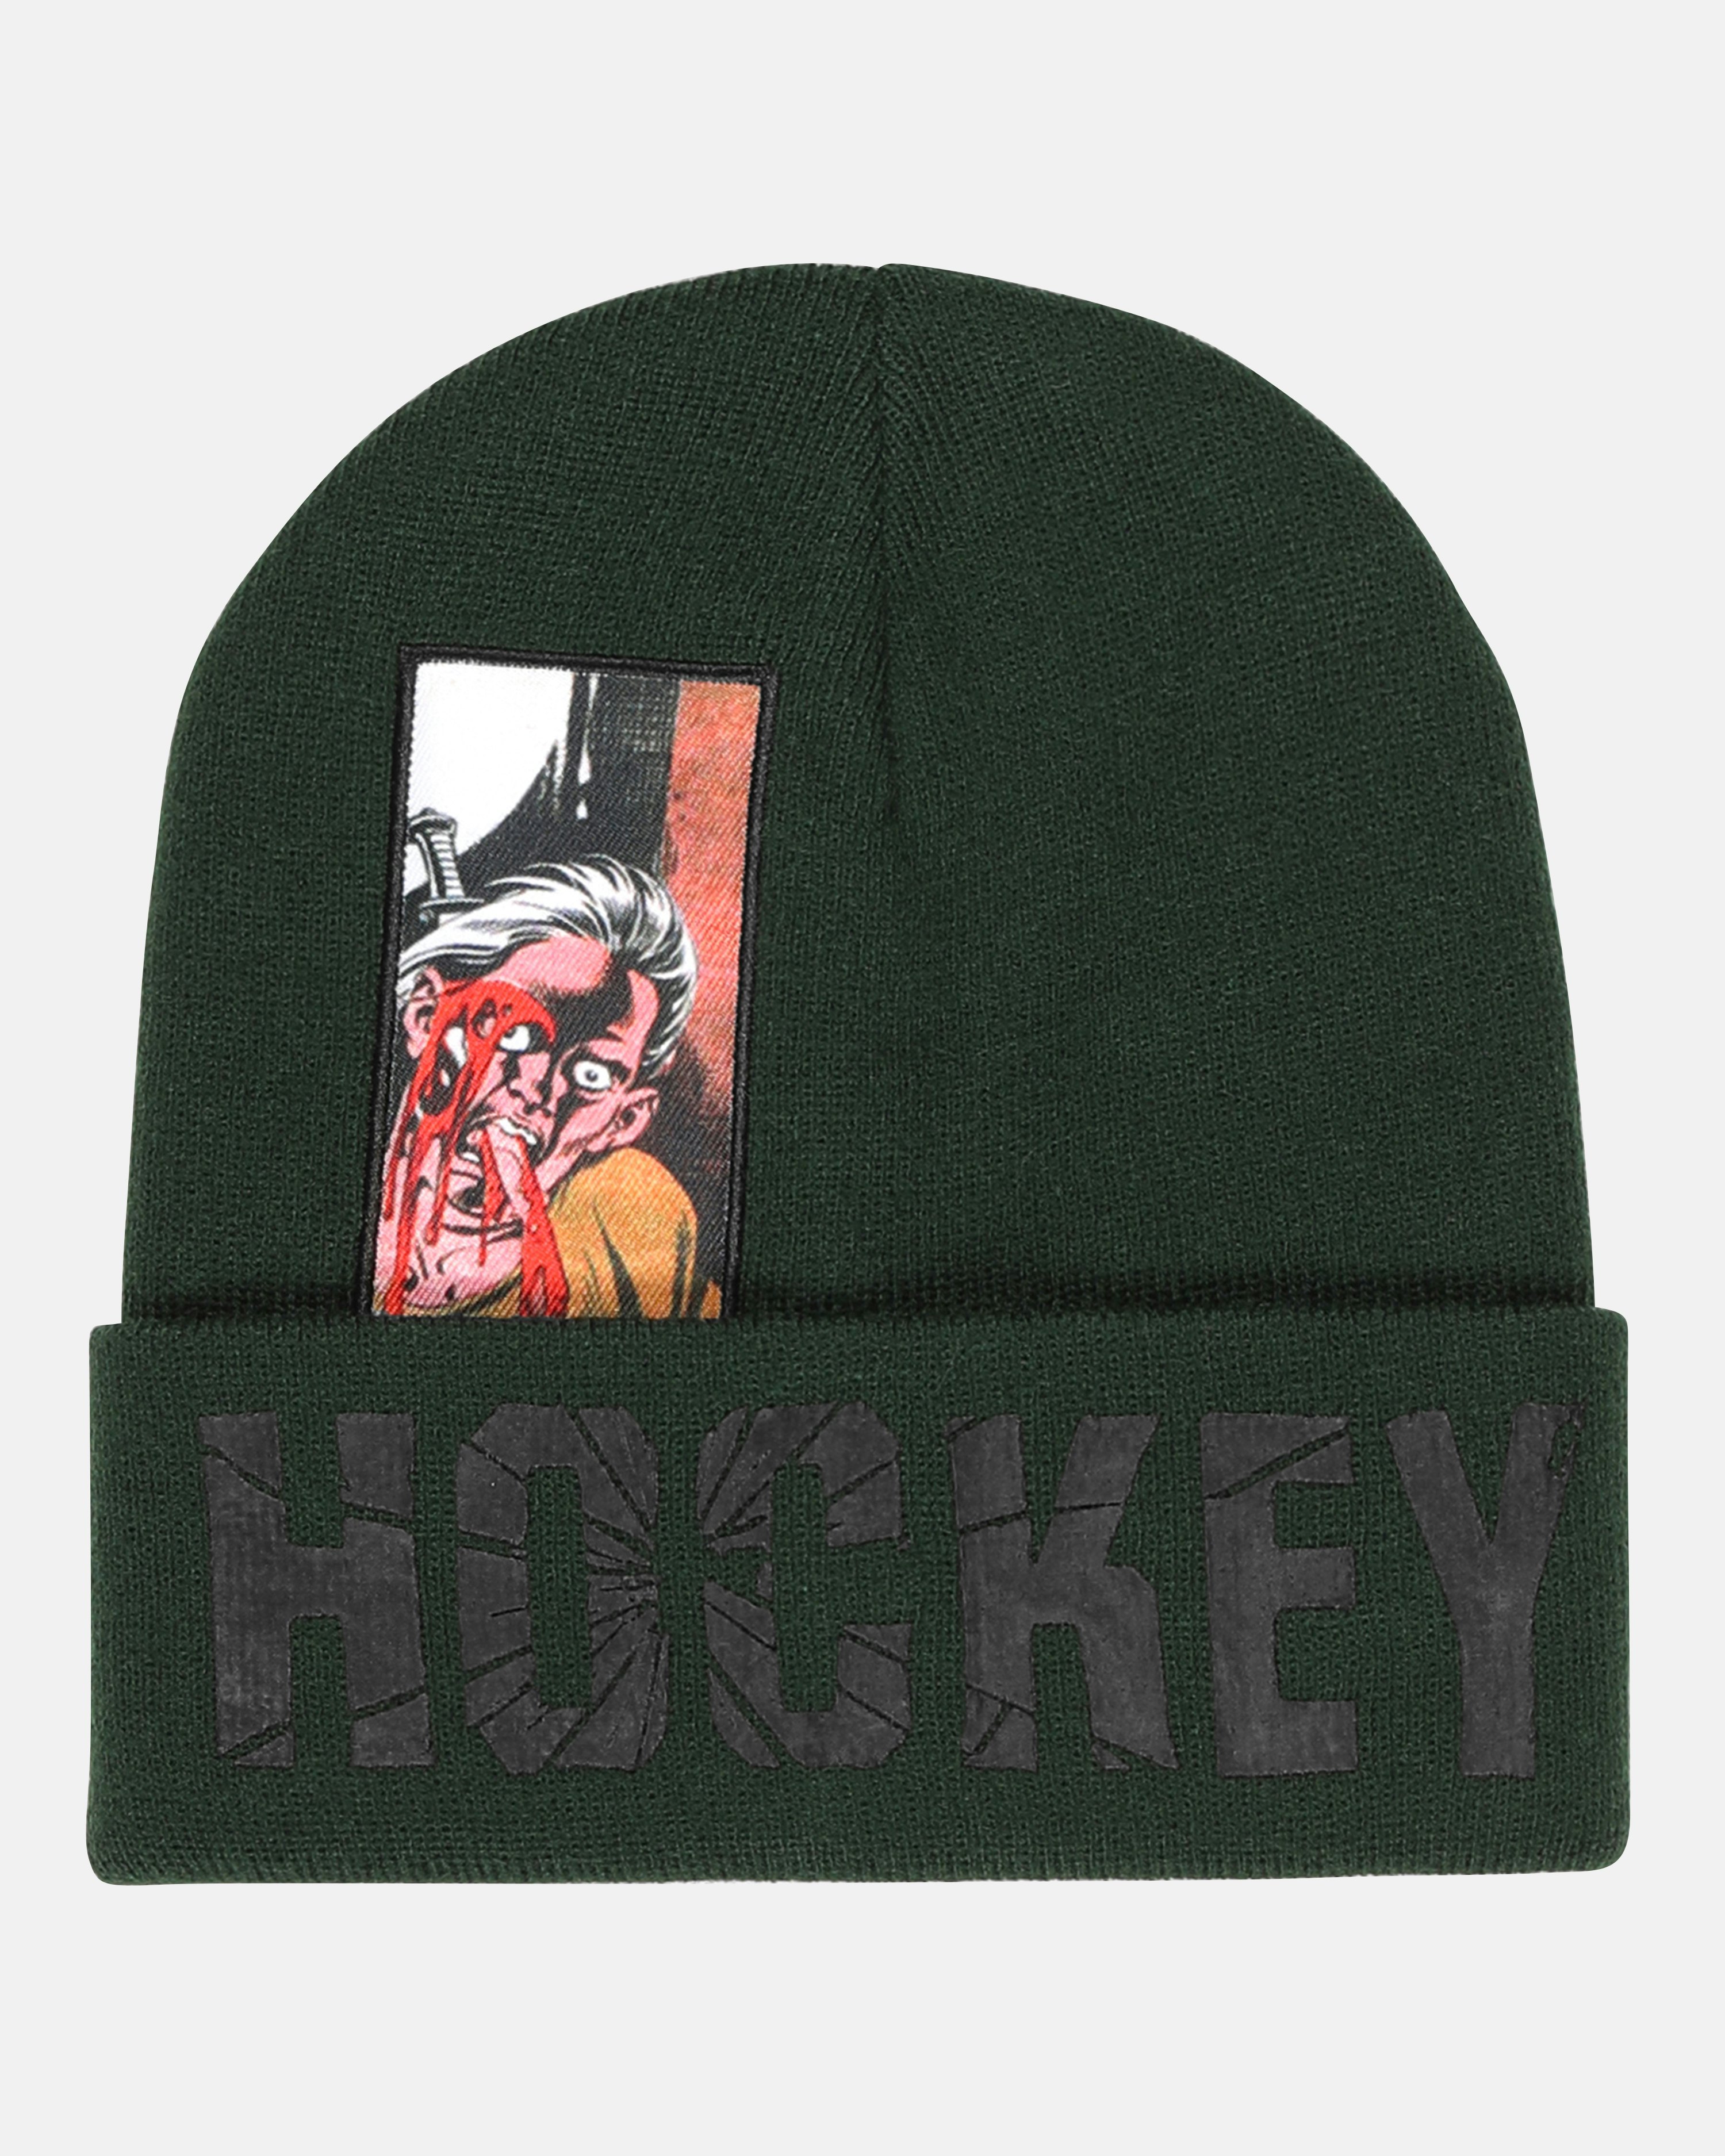 Hockey Knit Hats, Hockey Beanies